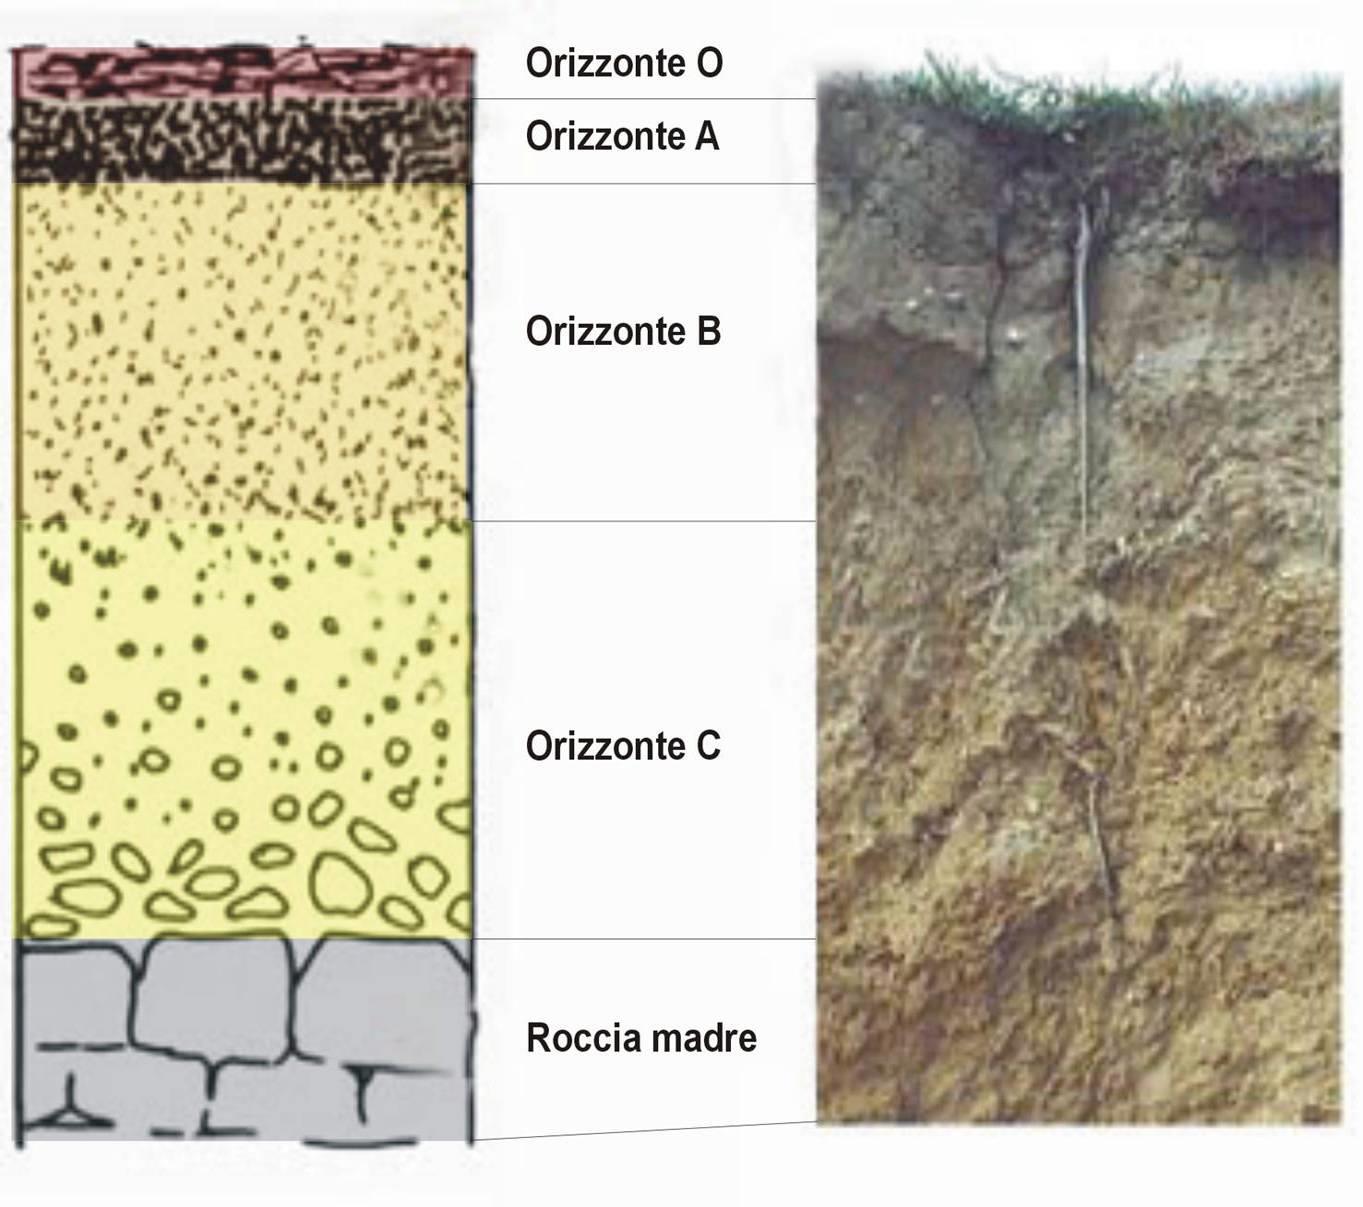 L ANIDRIDE CARBONICA (CO 2 ) NEI SUOLI la quantità di CO 2 nei suoli dipende dal tipo di substrato e di suolo, dal clima e dalla stagione.